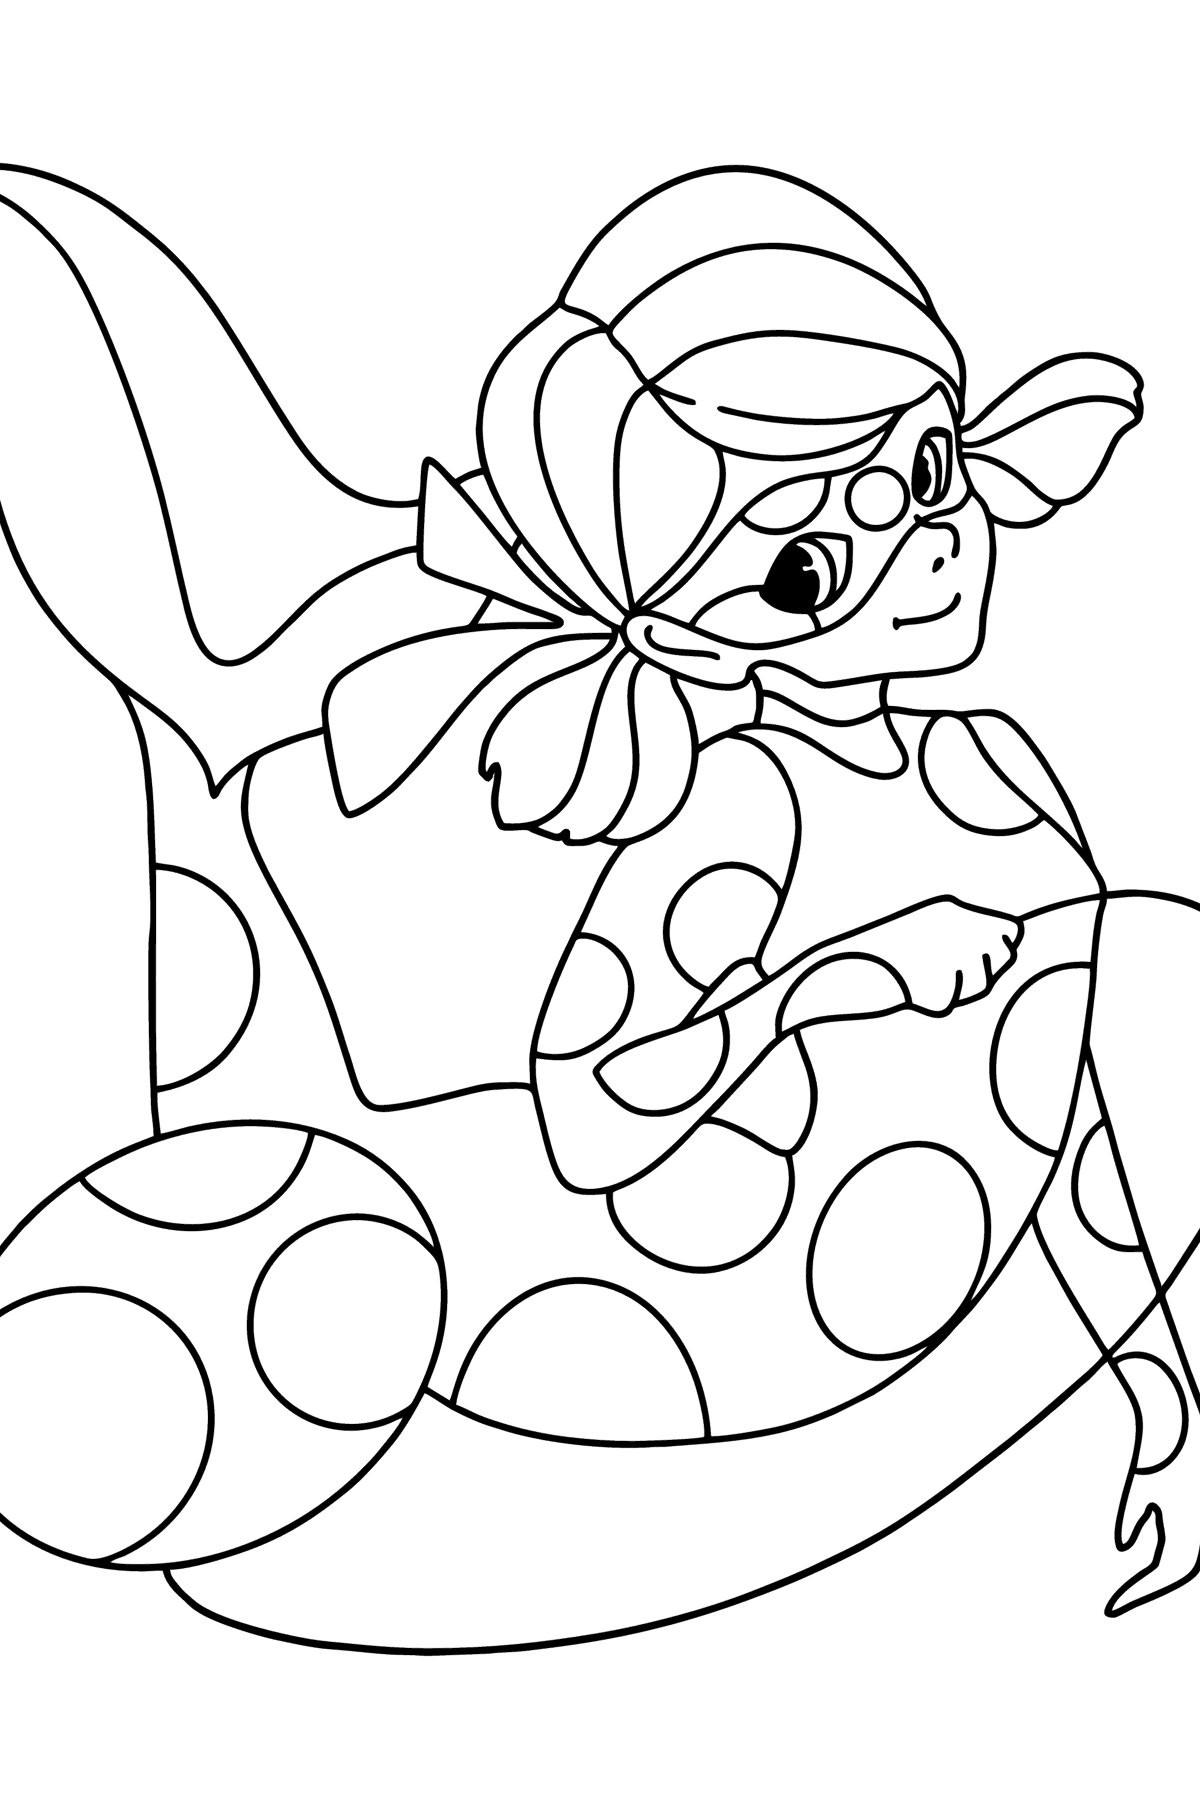 Dibujo de Aqua Ladybug para colorear - Dibujos para Colorear para Niños